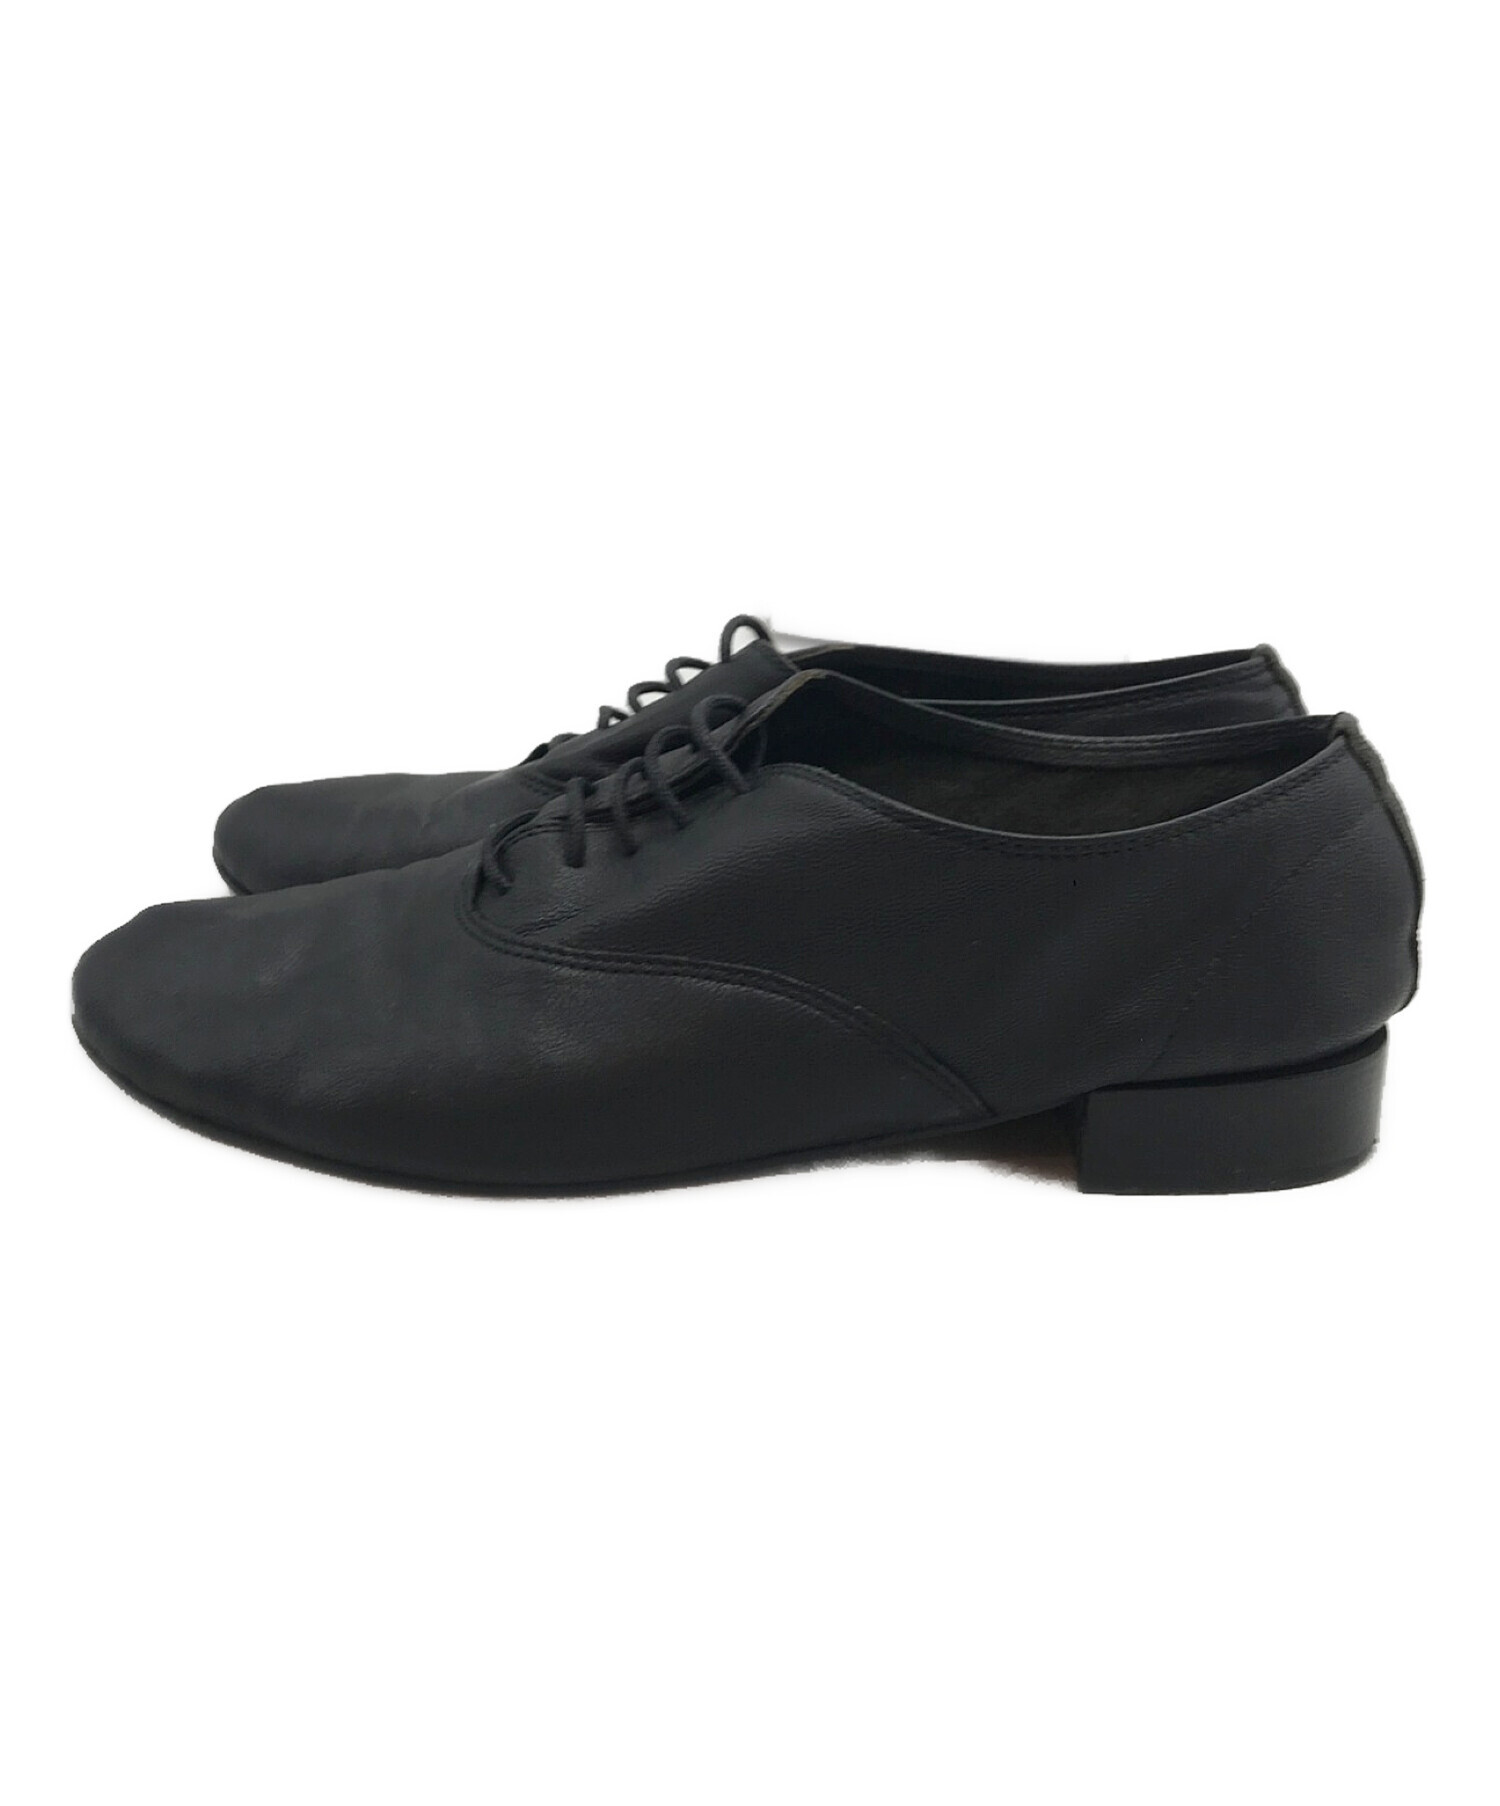 Repetto (レペット) Zizi Oxford Shoes/ジジ オックスフォード シューズ ブラック サイズ:39 1/2